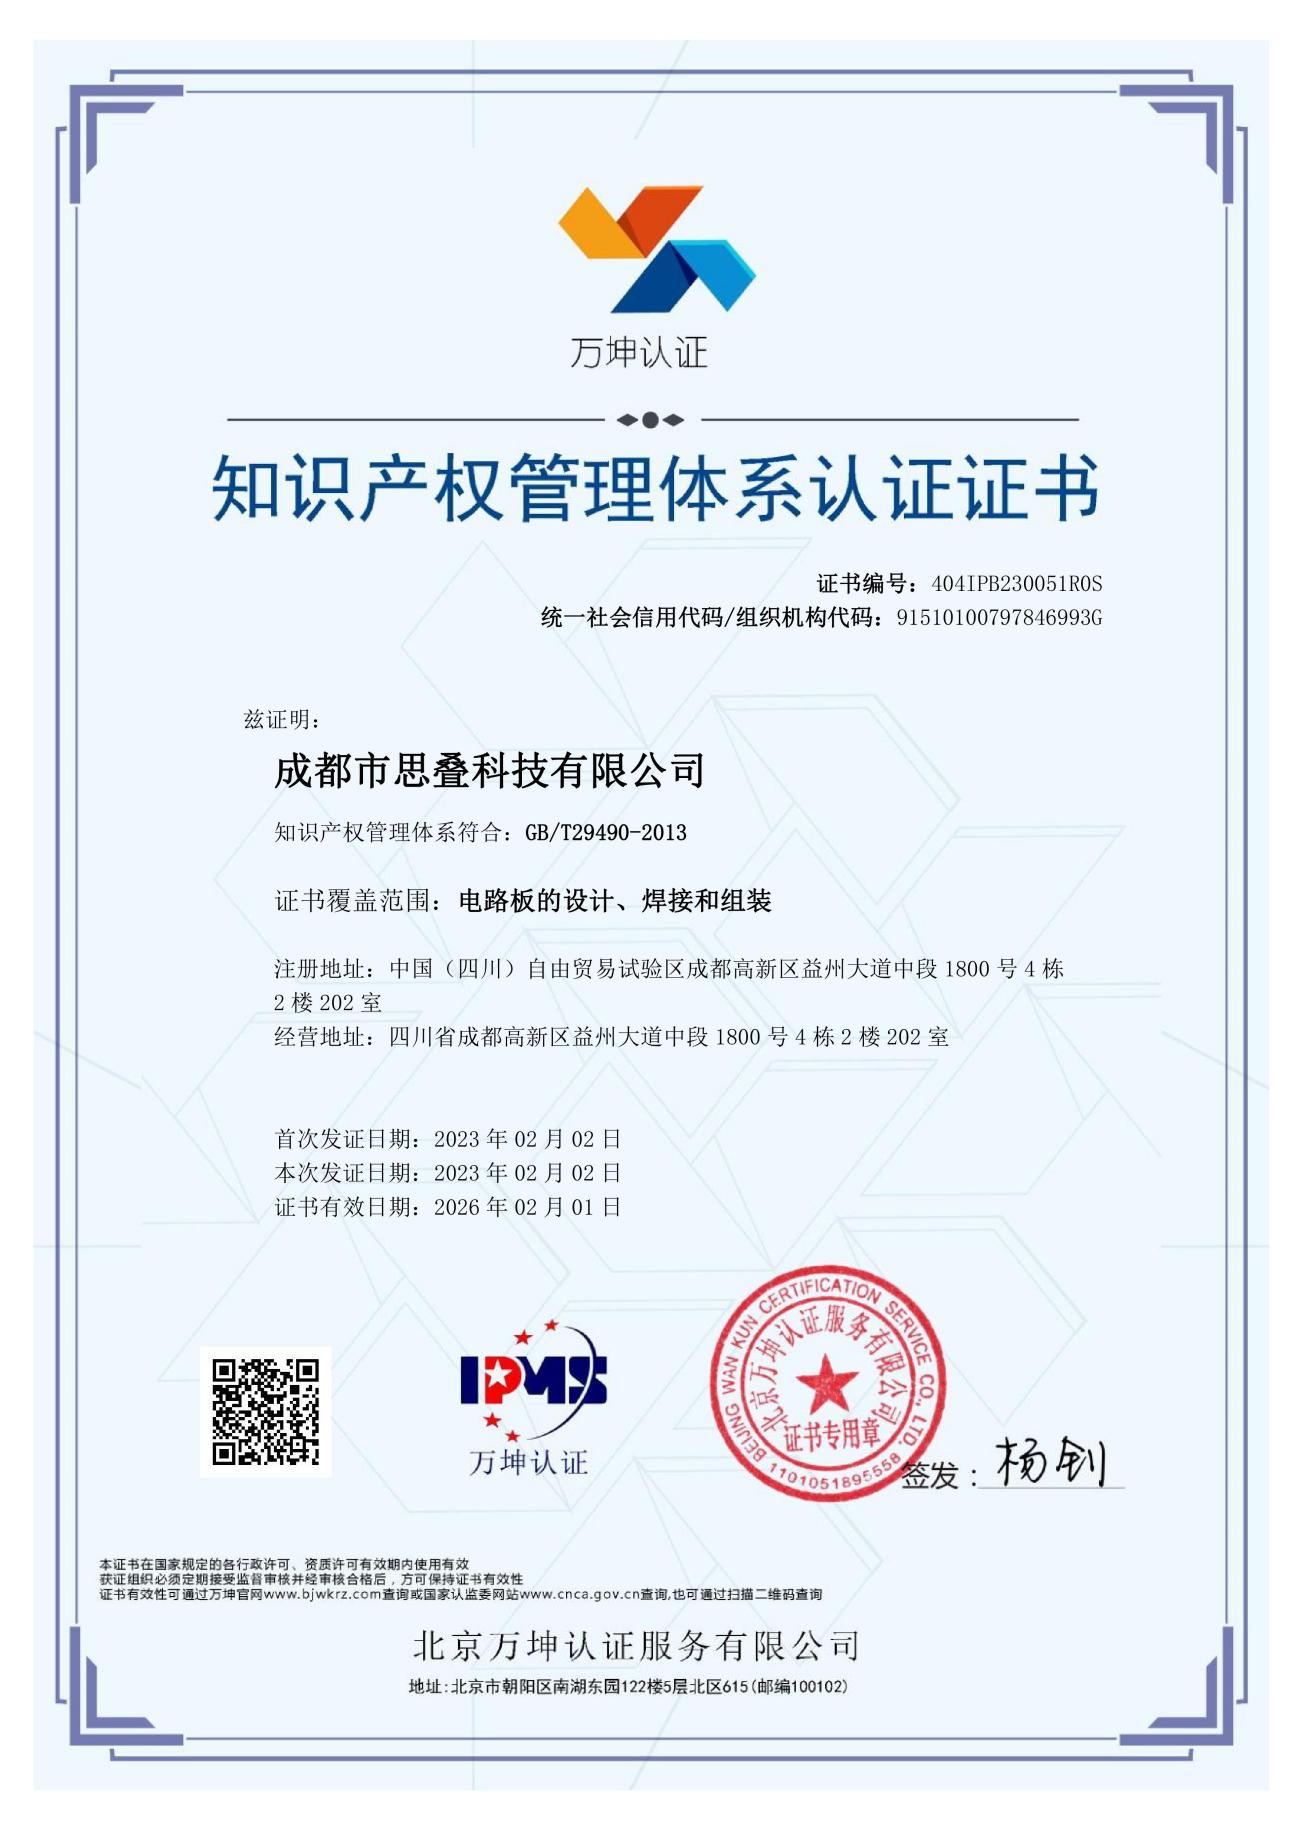 知识产权贯标证书-中文版